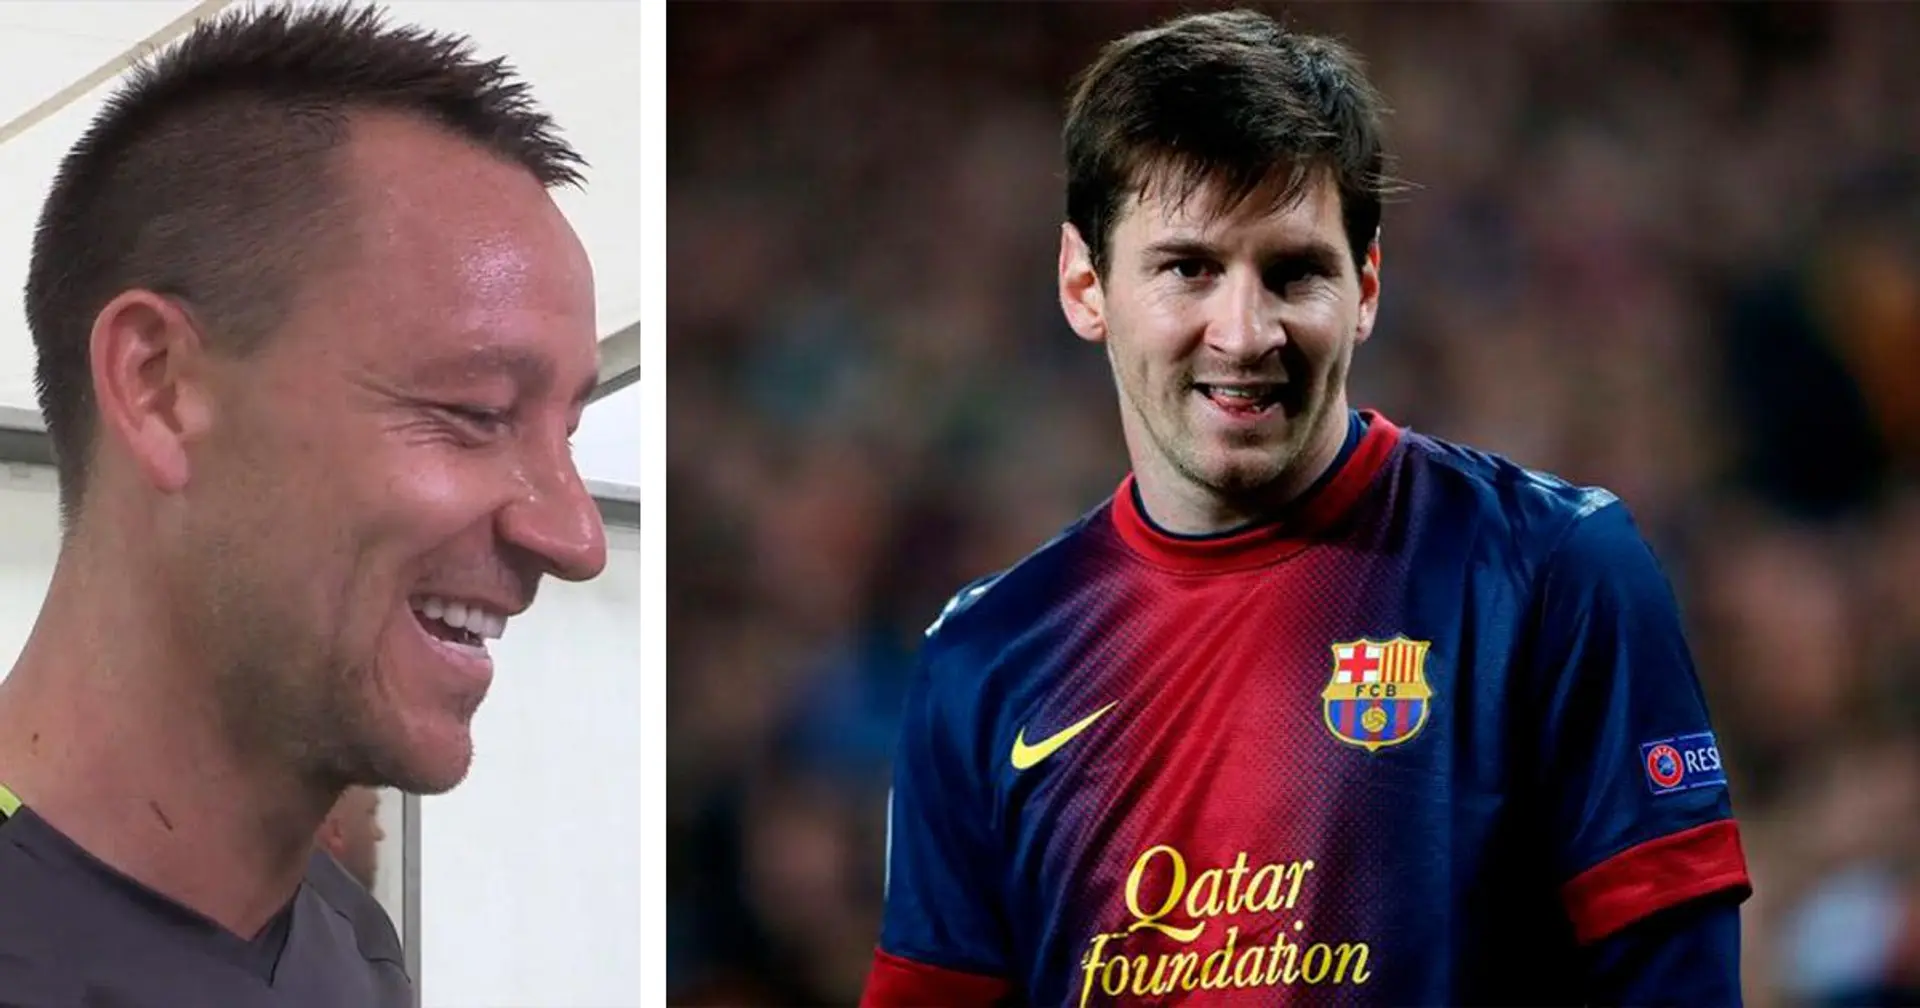 'A mis hijos les encanta': cómo John Terry se quedó sin apelativos para describir a Leo Messi como futbolista y persona